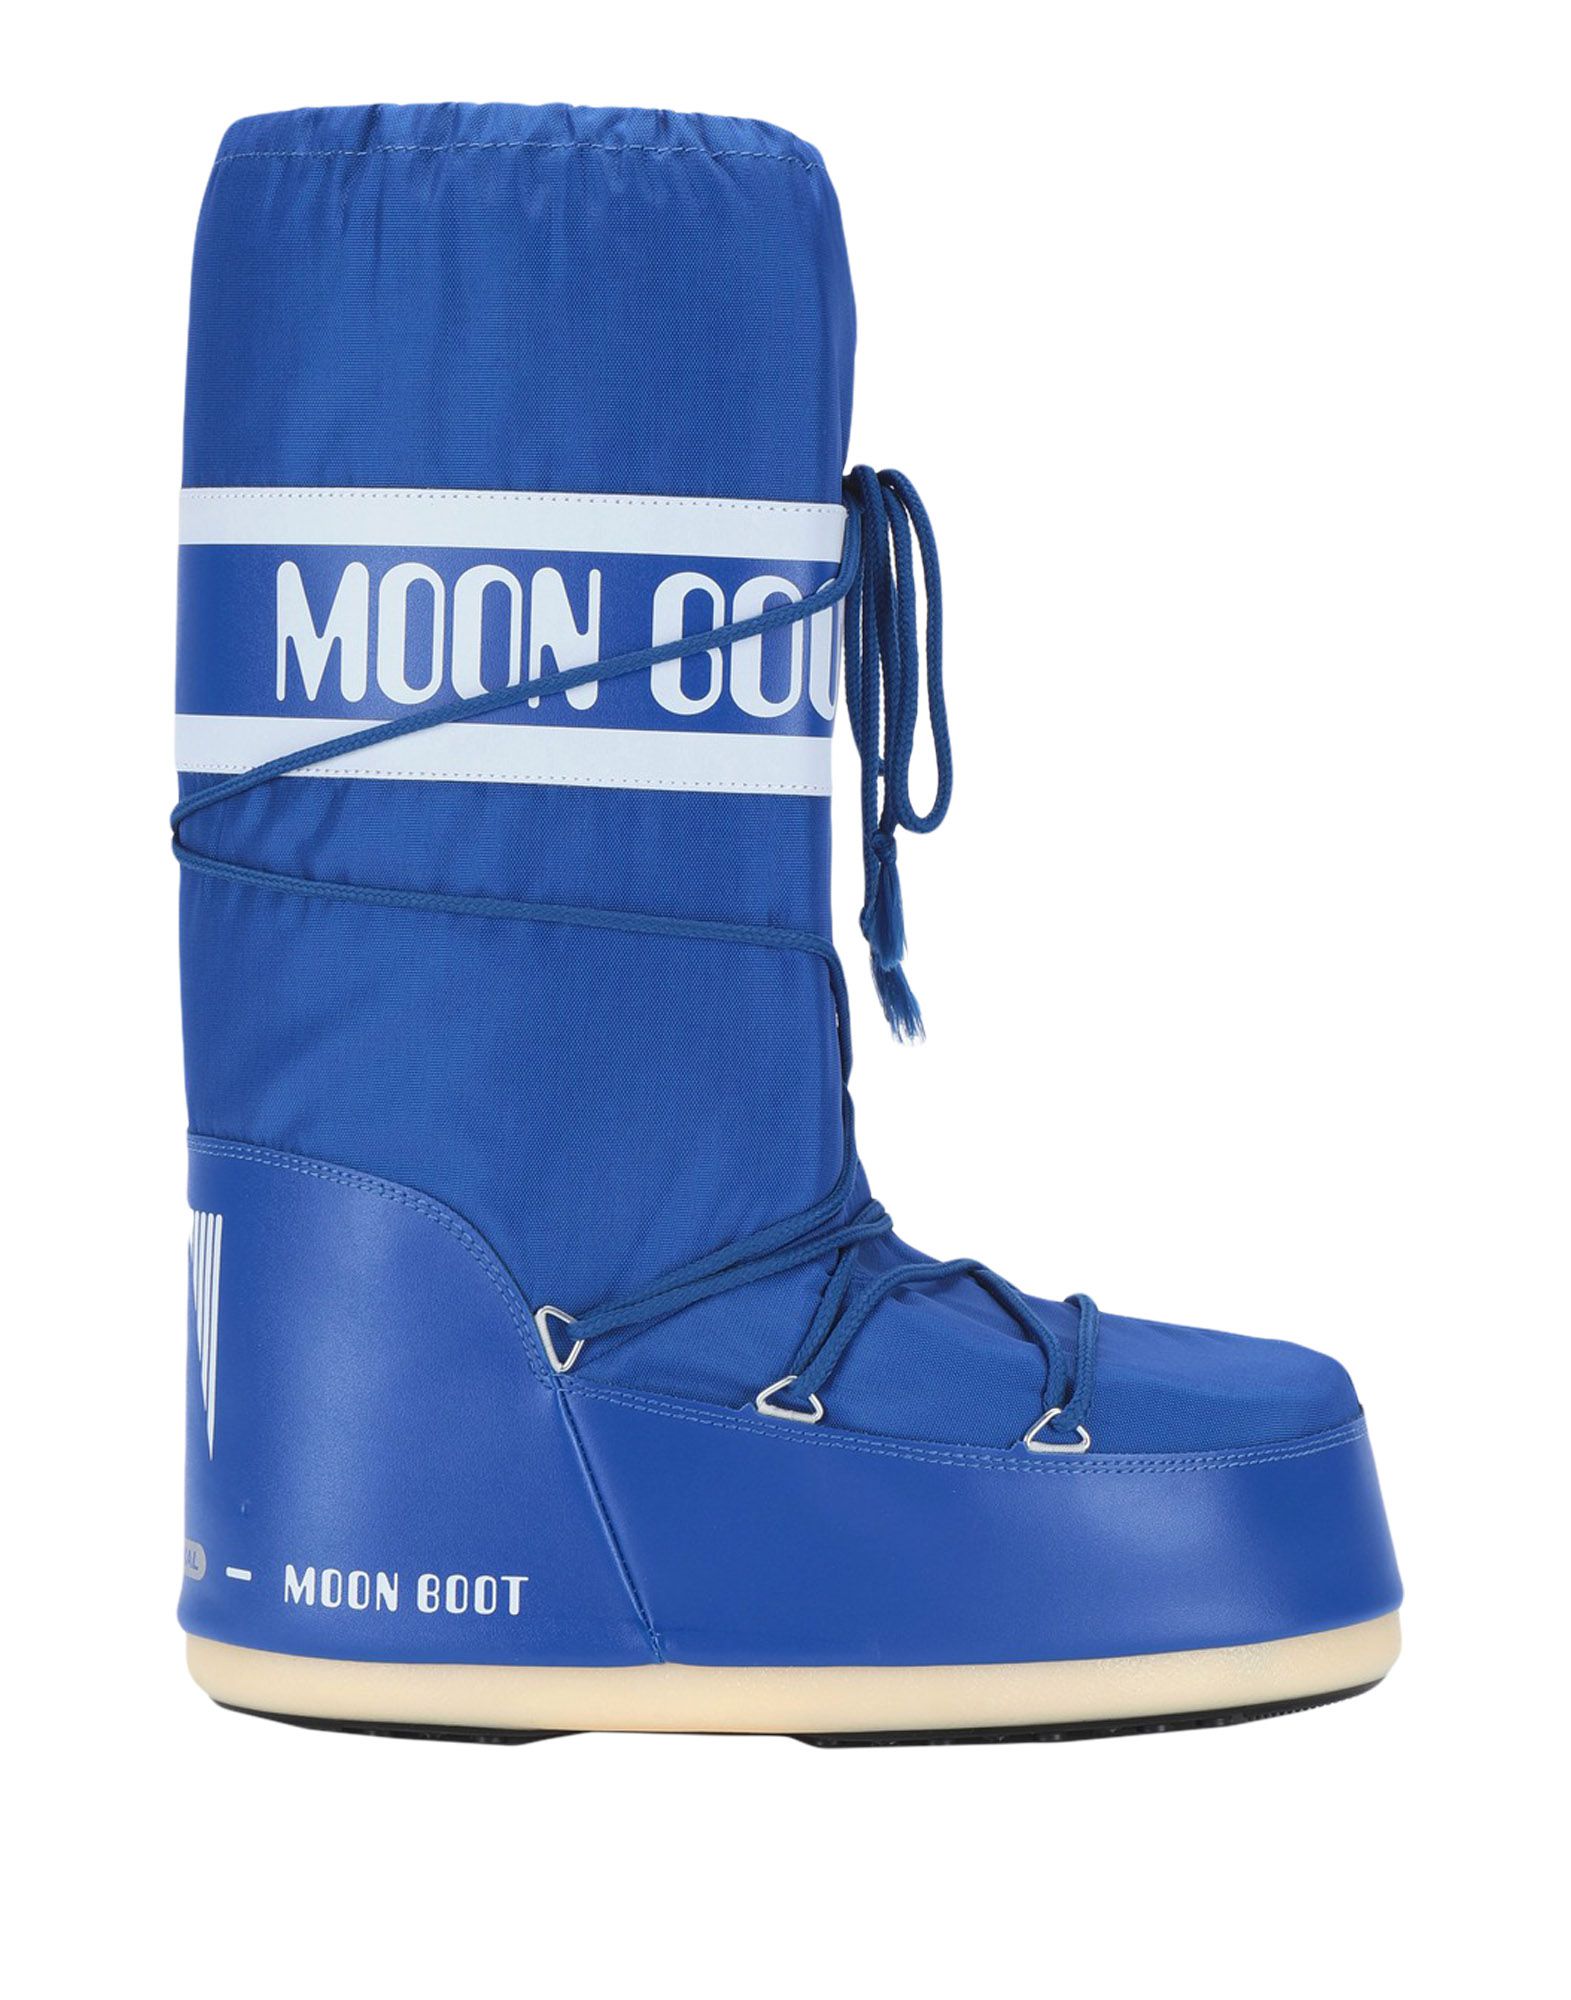 《送料無料》MOON BOOT メンズ ブーツ ブライトブルー 45 紡績繊維 MOON BOOT NYLON